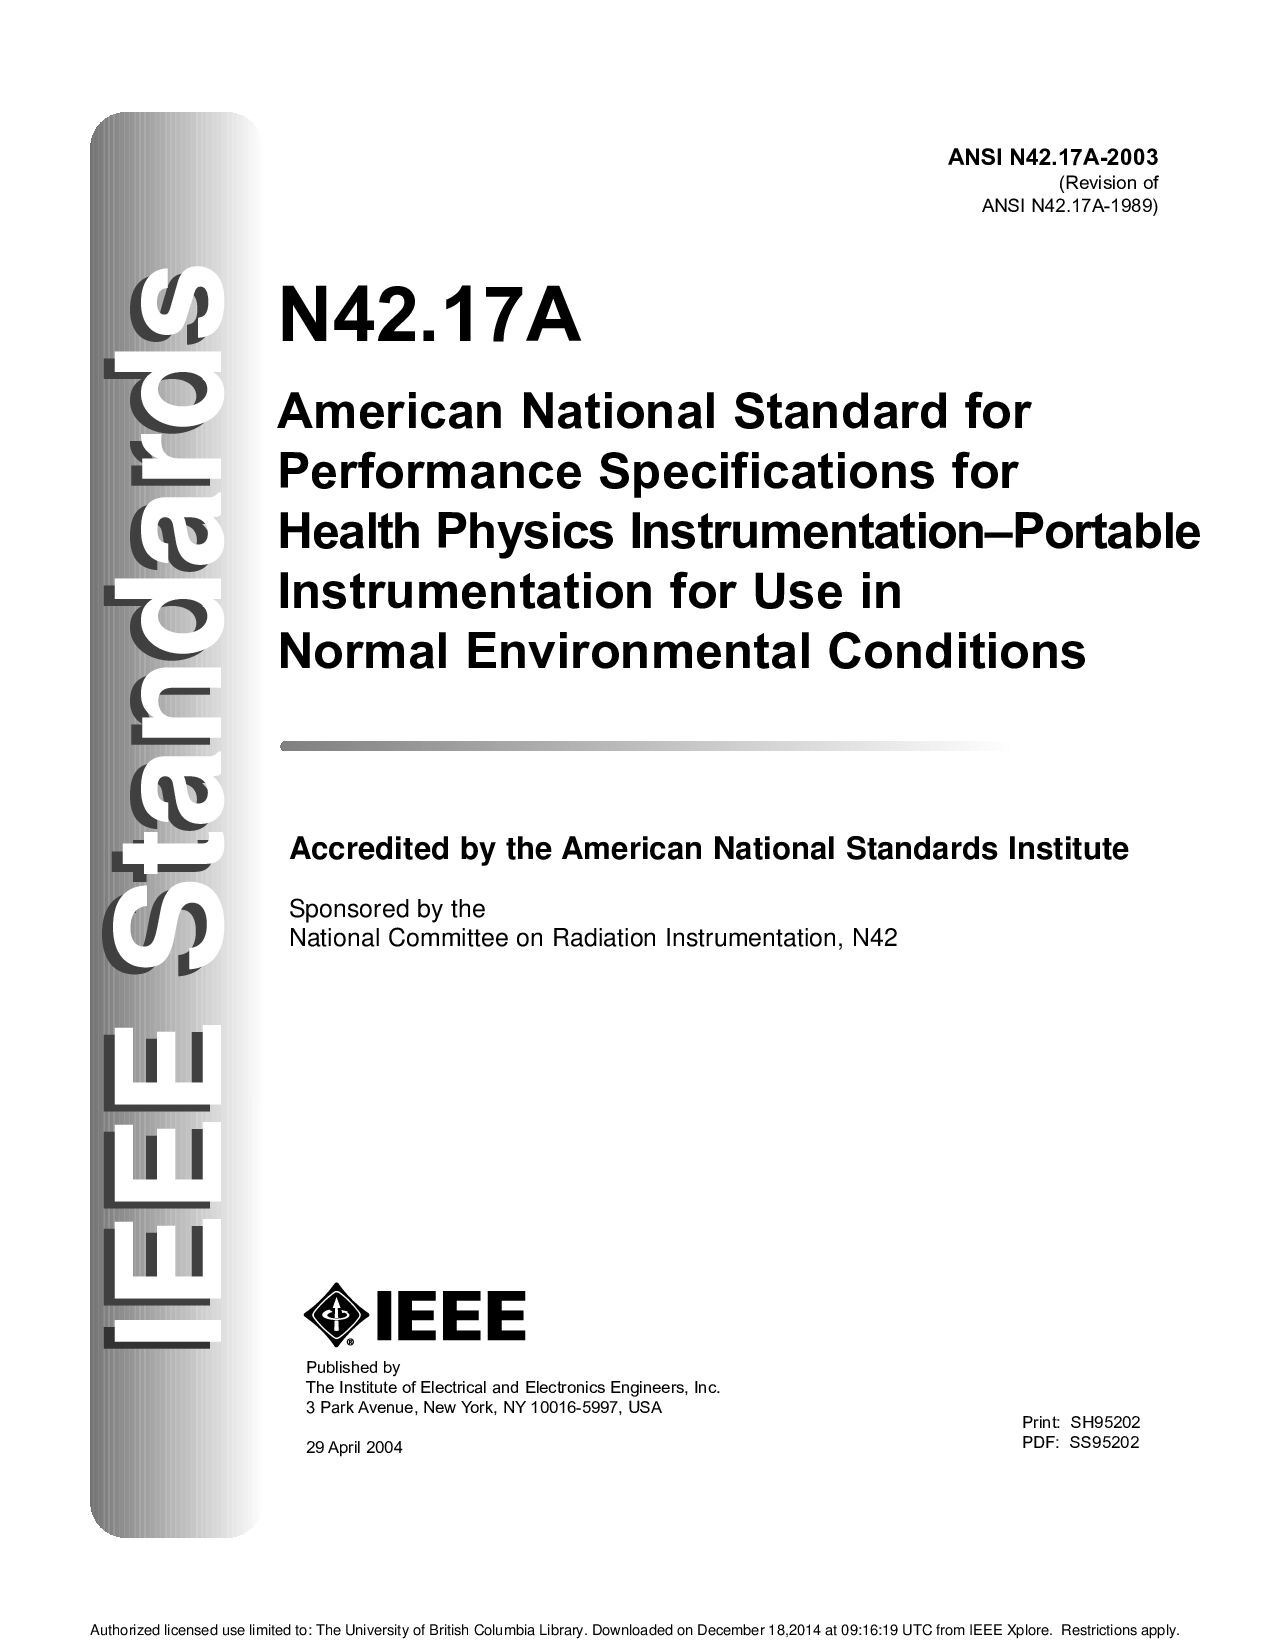 ANSI N42.17a-2003